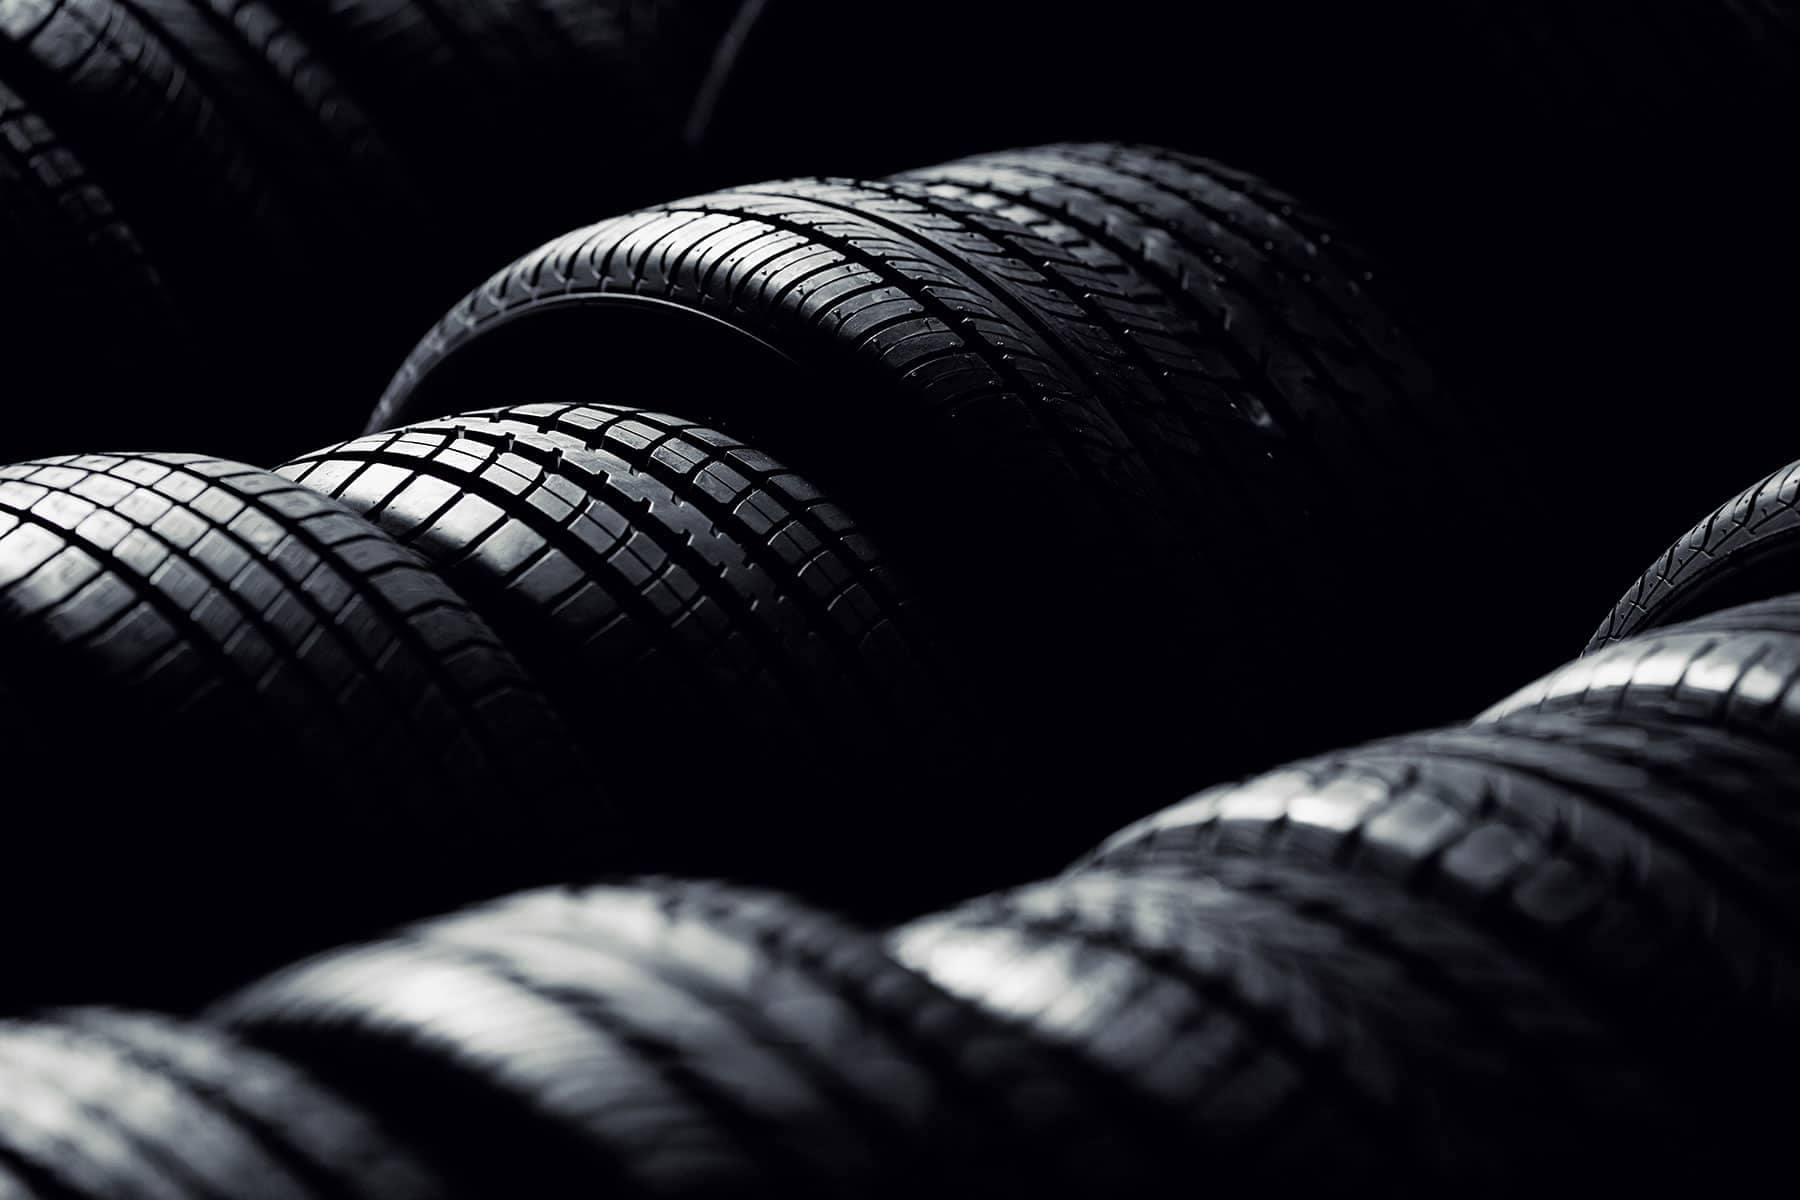 row of car tires